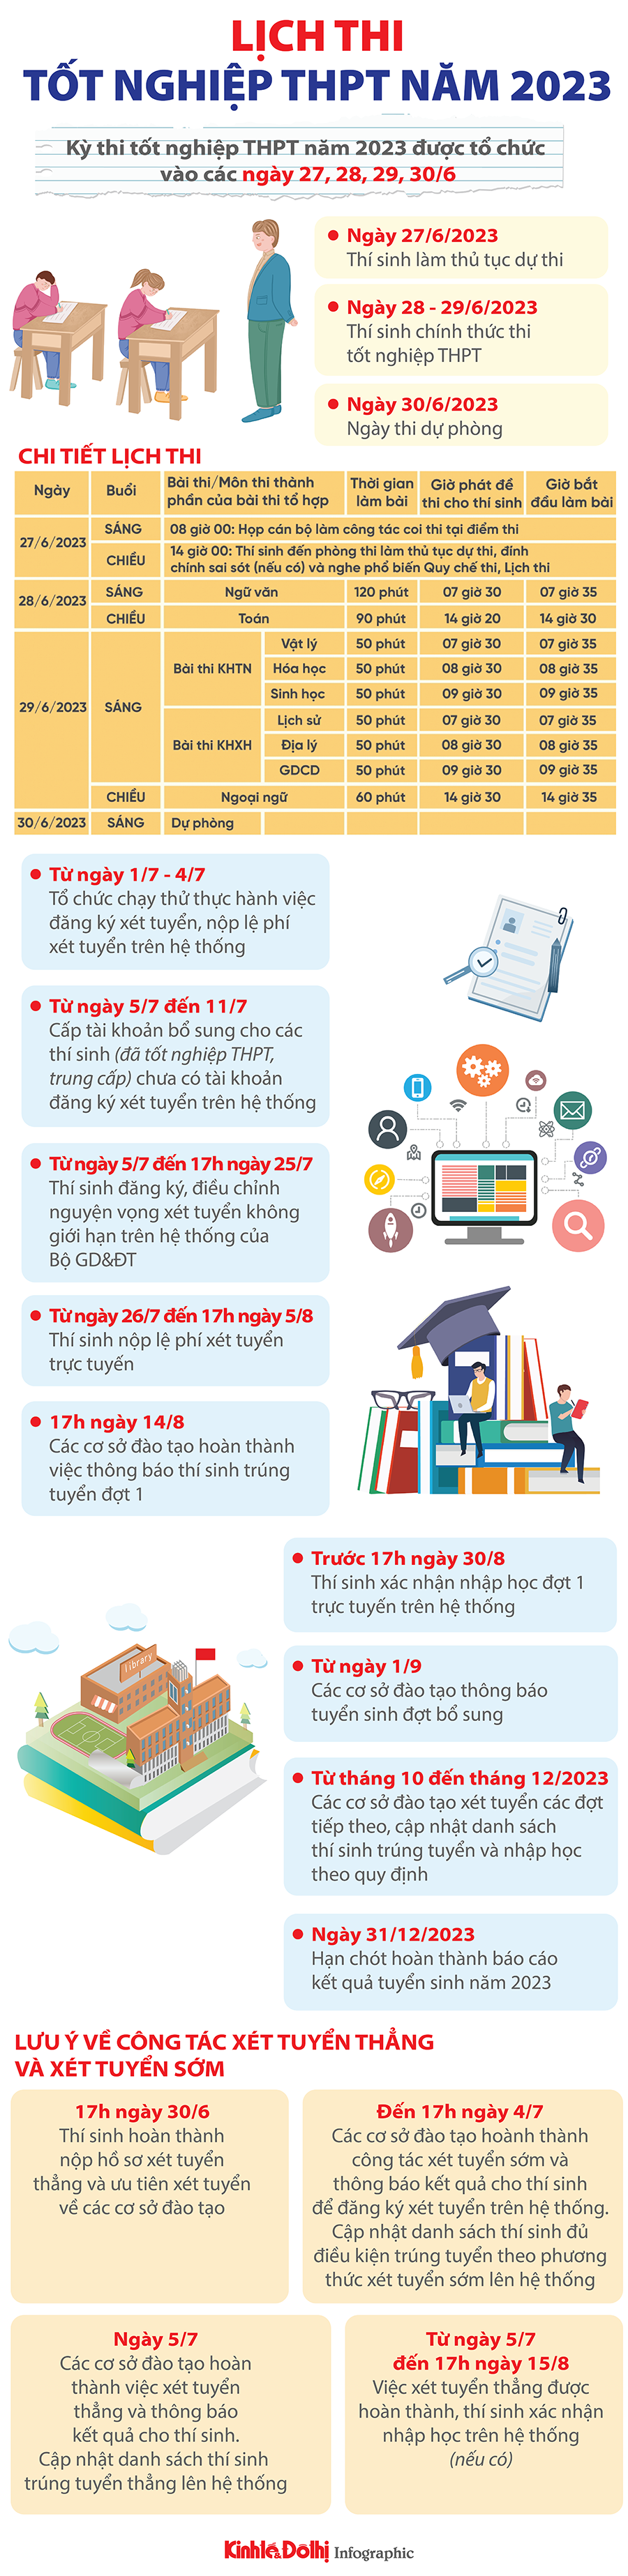 Chi tiết lịch thi tốt nghiệp THPT năm 2023. Infographic: Đăng Nguyễn.